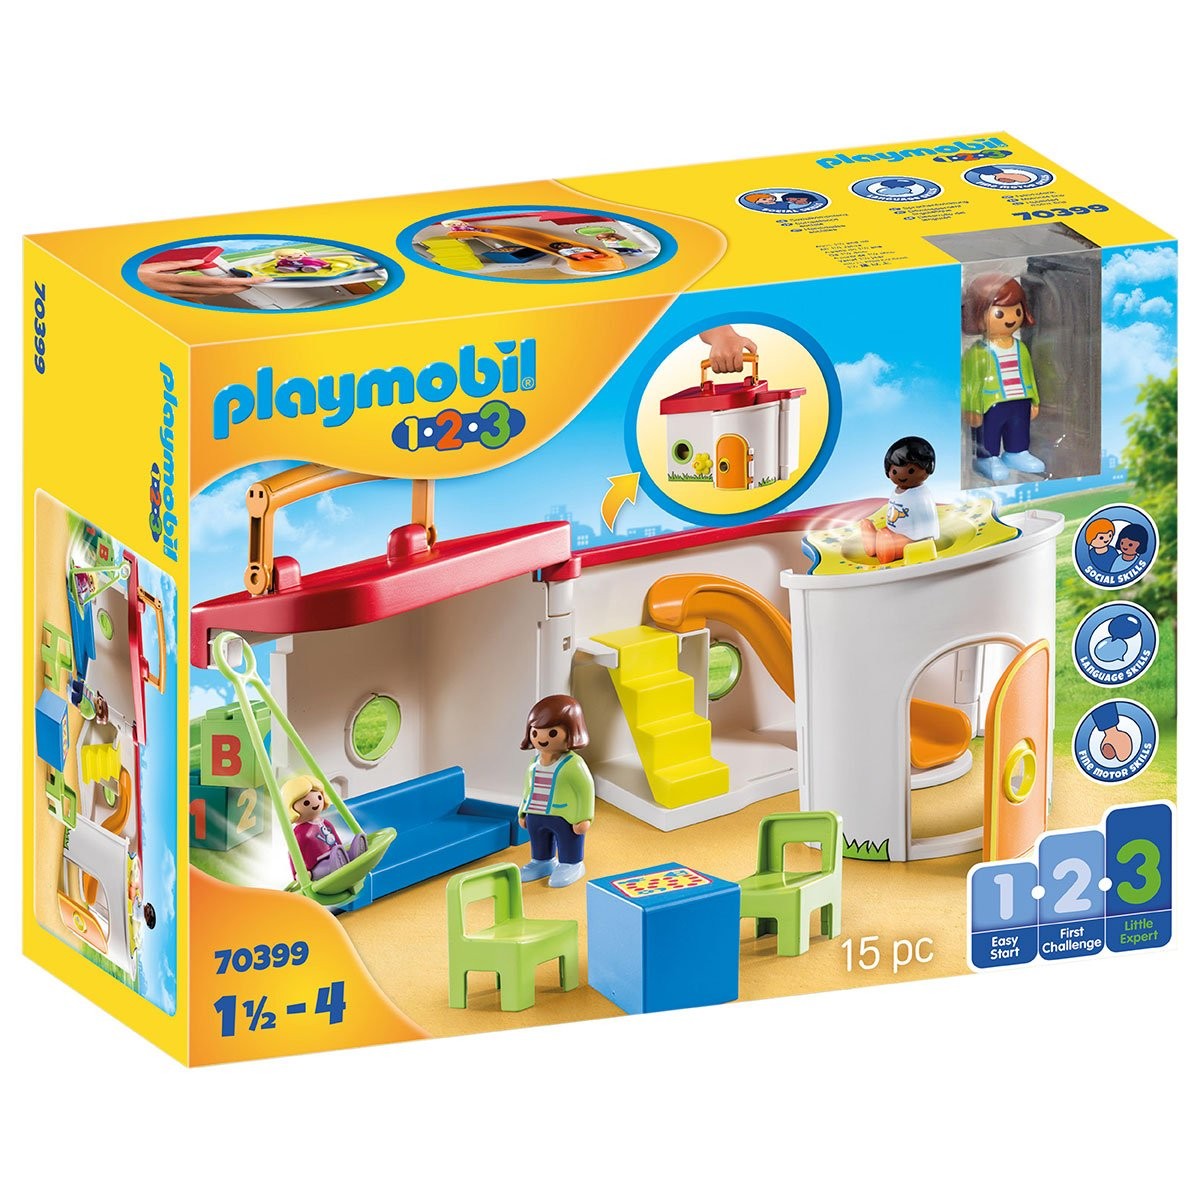 Petit accessoire jouet enfant Playmobil ref 123 